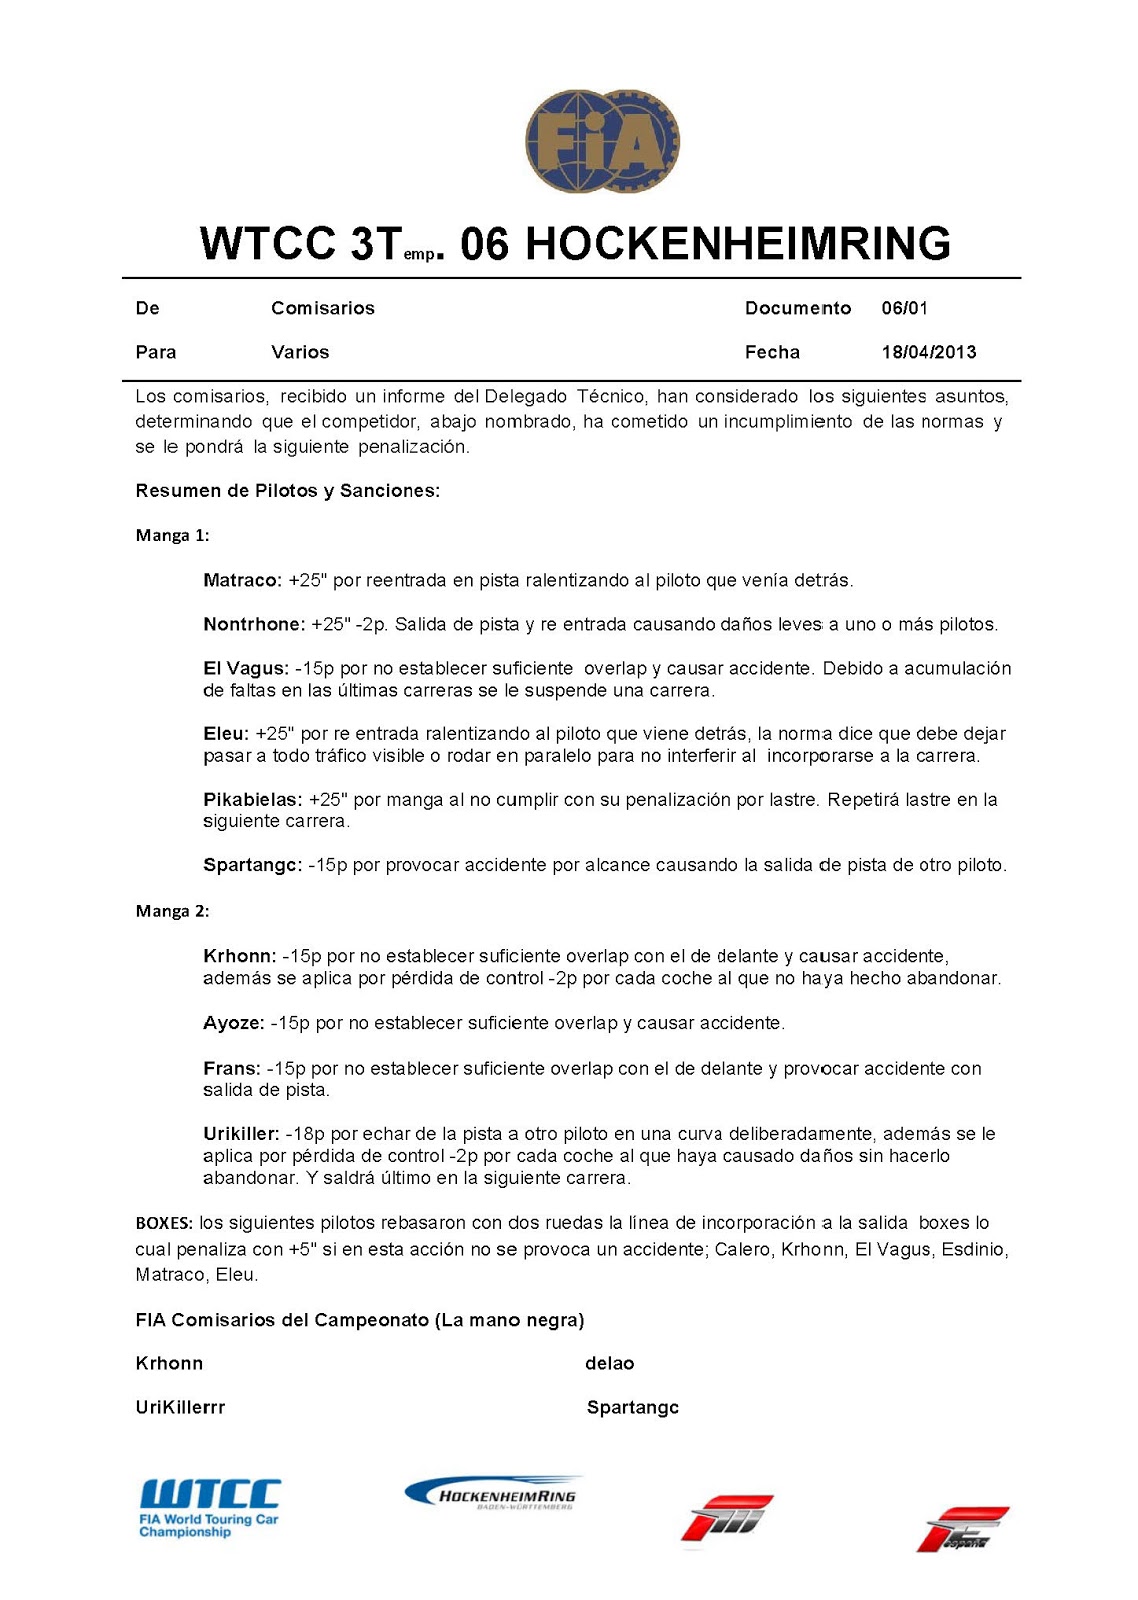 [WTCC] 3a Temp. Revisiones y sanciones Incidentes+hockenheimring